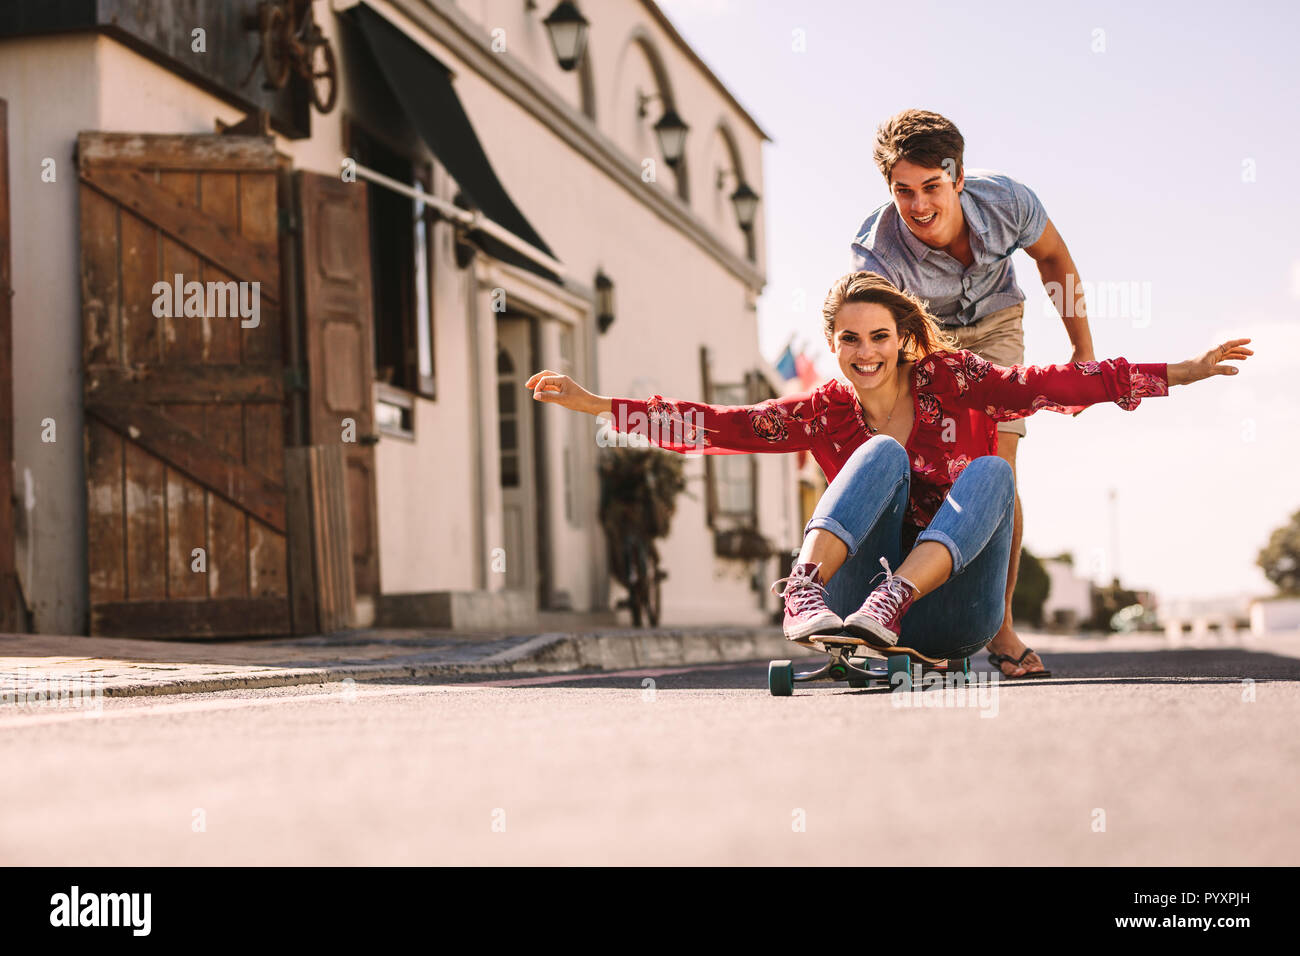 Donna sorridente seduto su uno skateboard lo scorrimento verso il basso una strada vuota. L'uomo aiutando la sua ragazza ride su uno skateboard che spinge da dietro. Foto Stock